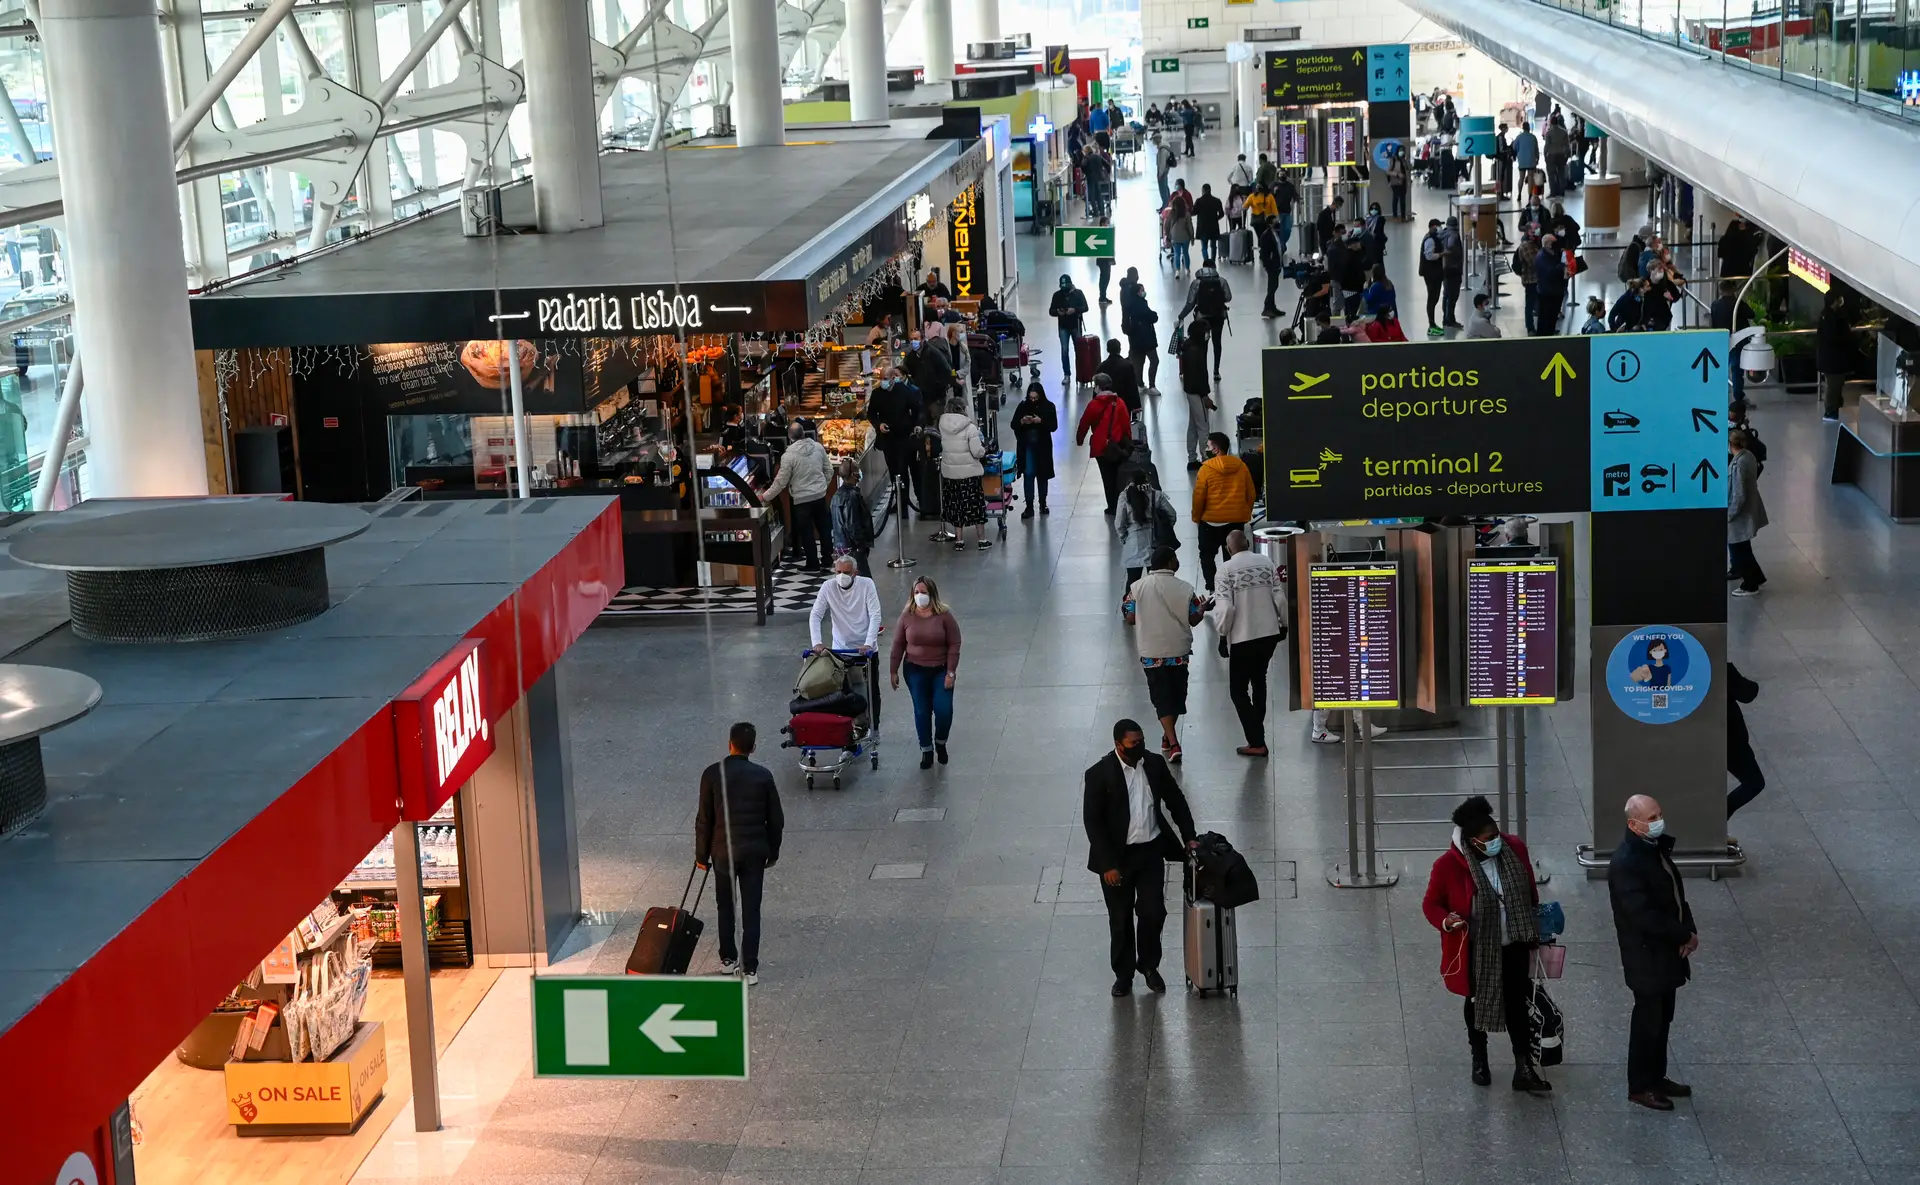 Previstos mais de 30 cancelamentos de voos ao longo do dia no aeroporto de Lisboa, a maioria da TAP